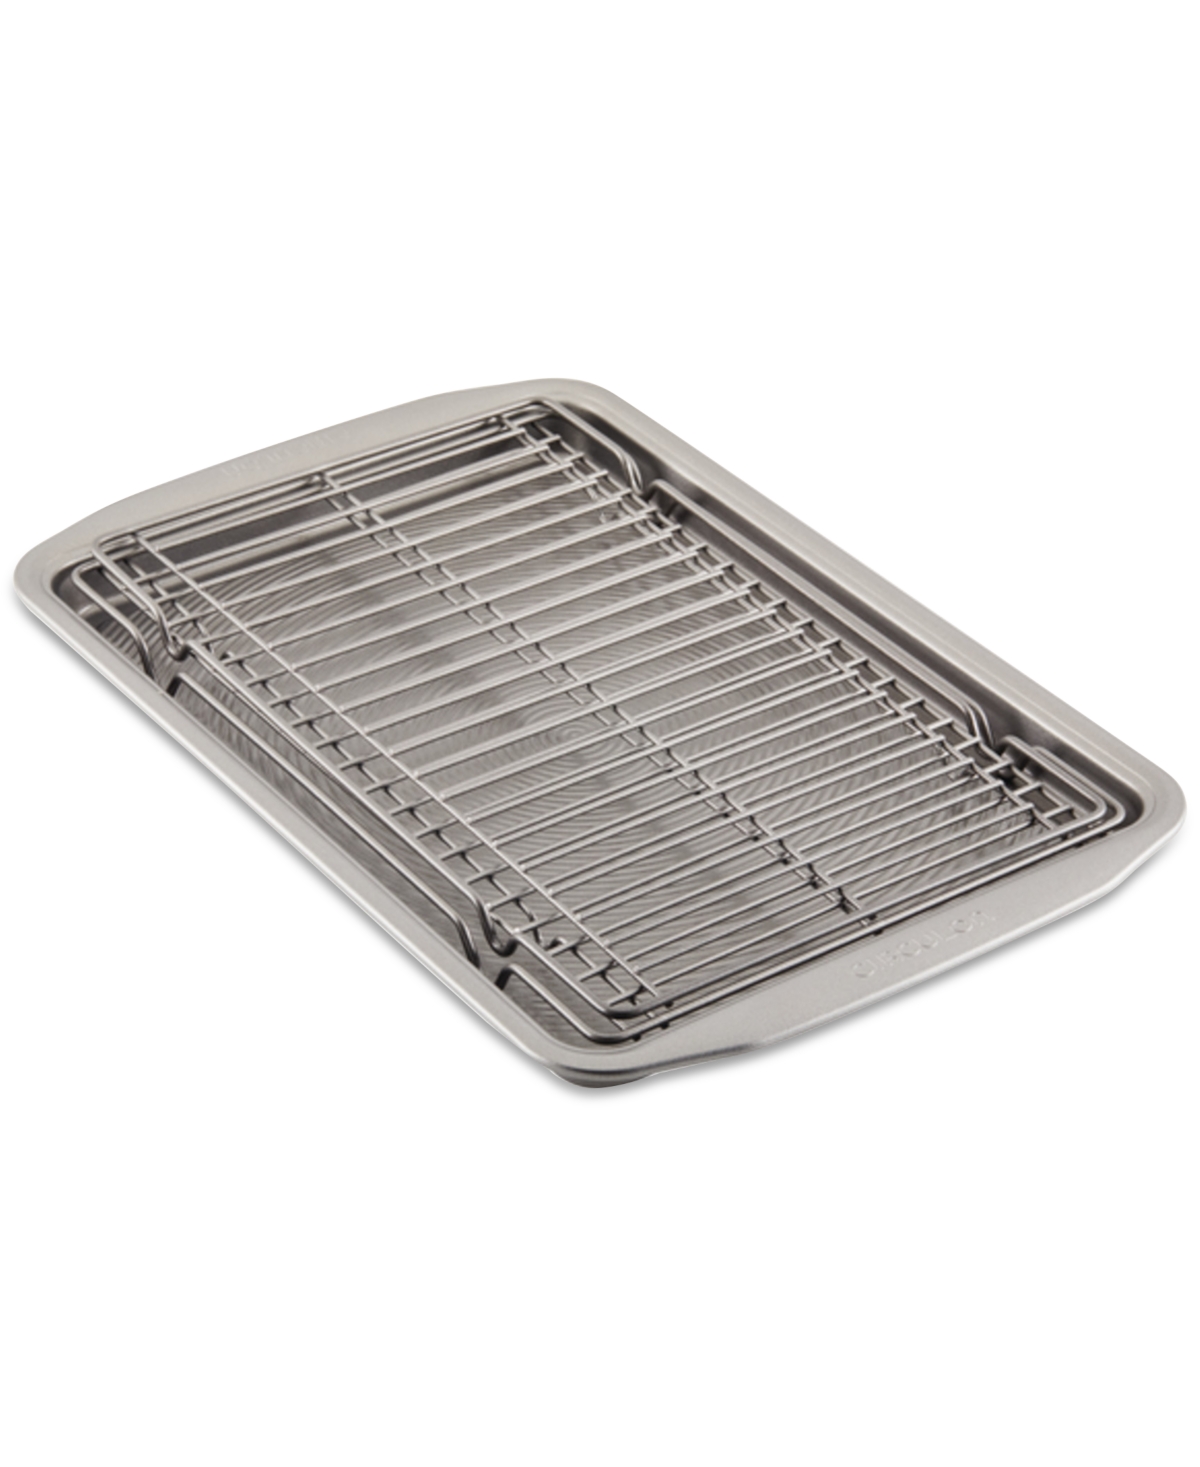 Circulon Bakeware 10" X 15" Baking Sheet Pan & Expandable Cooling Rack 3-pc. Set In Silver